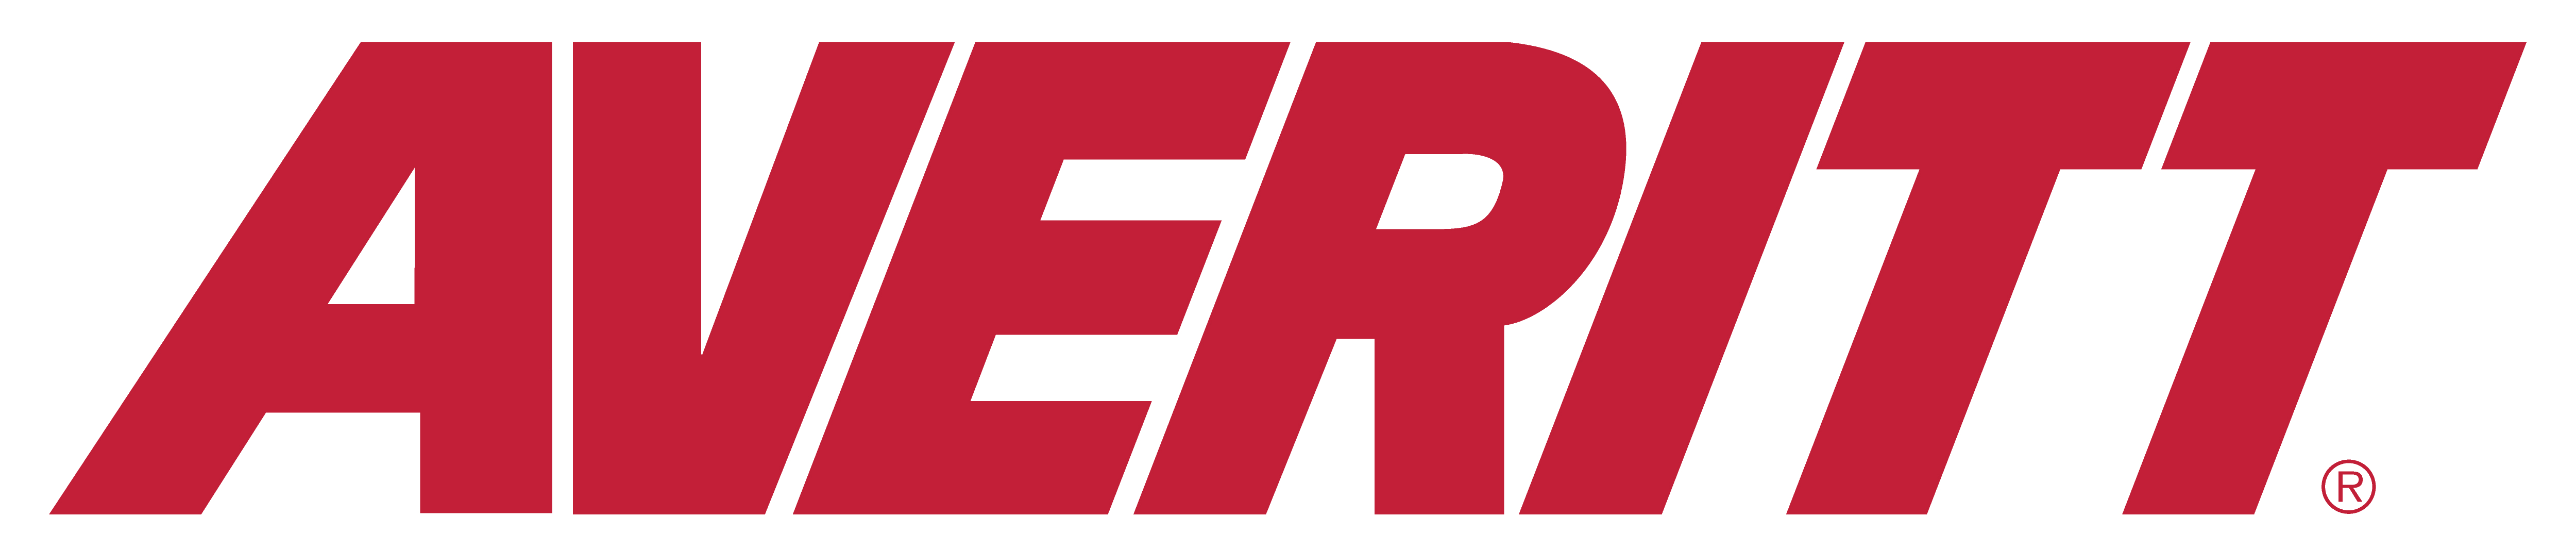 Averitt Logo